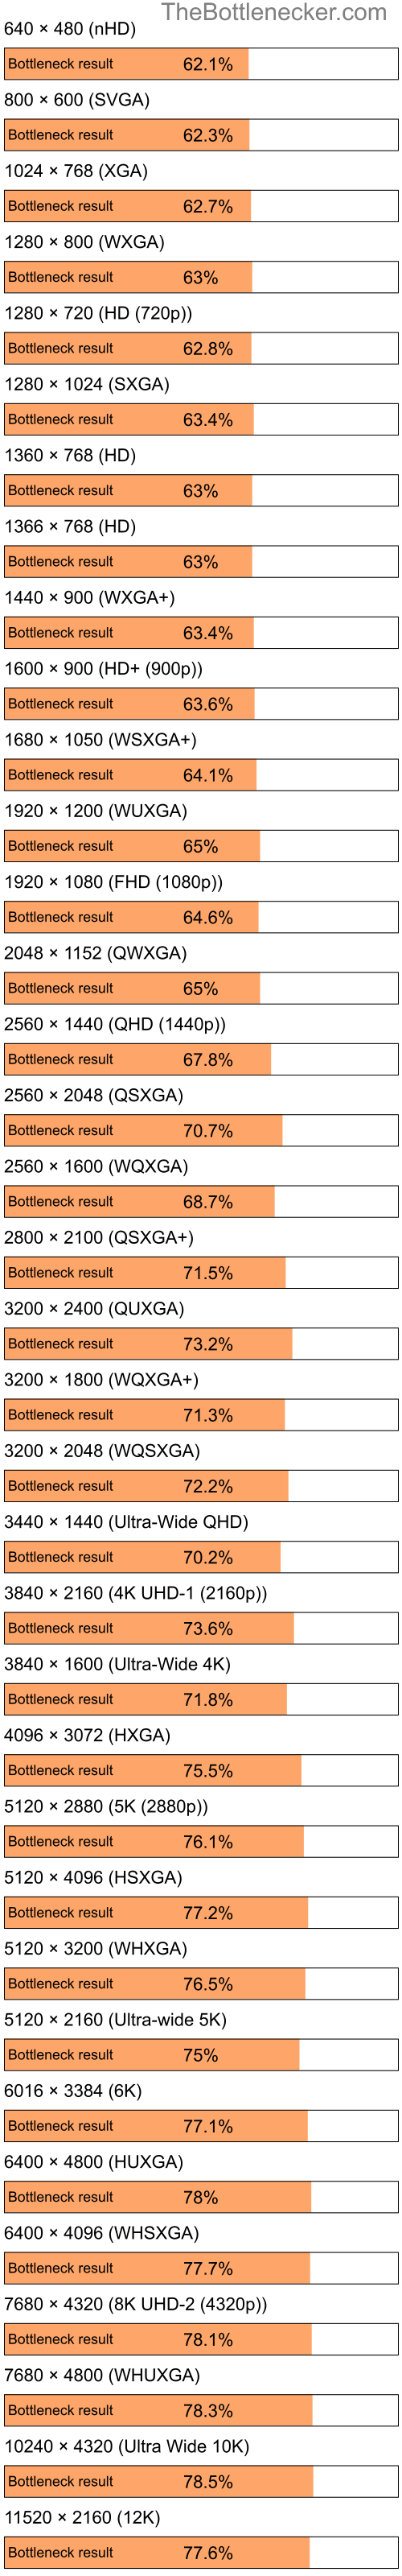 Bottleneck results by resolution for Intel Celeron and NVIDIA GeForce 9400 in General Tasks